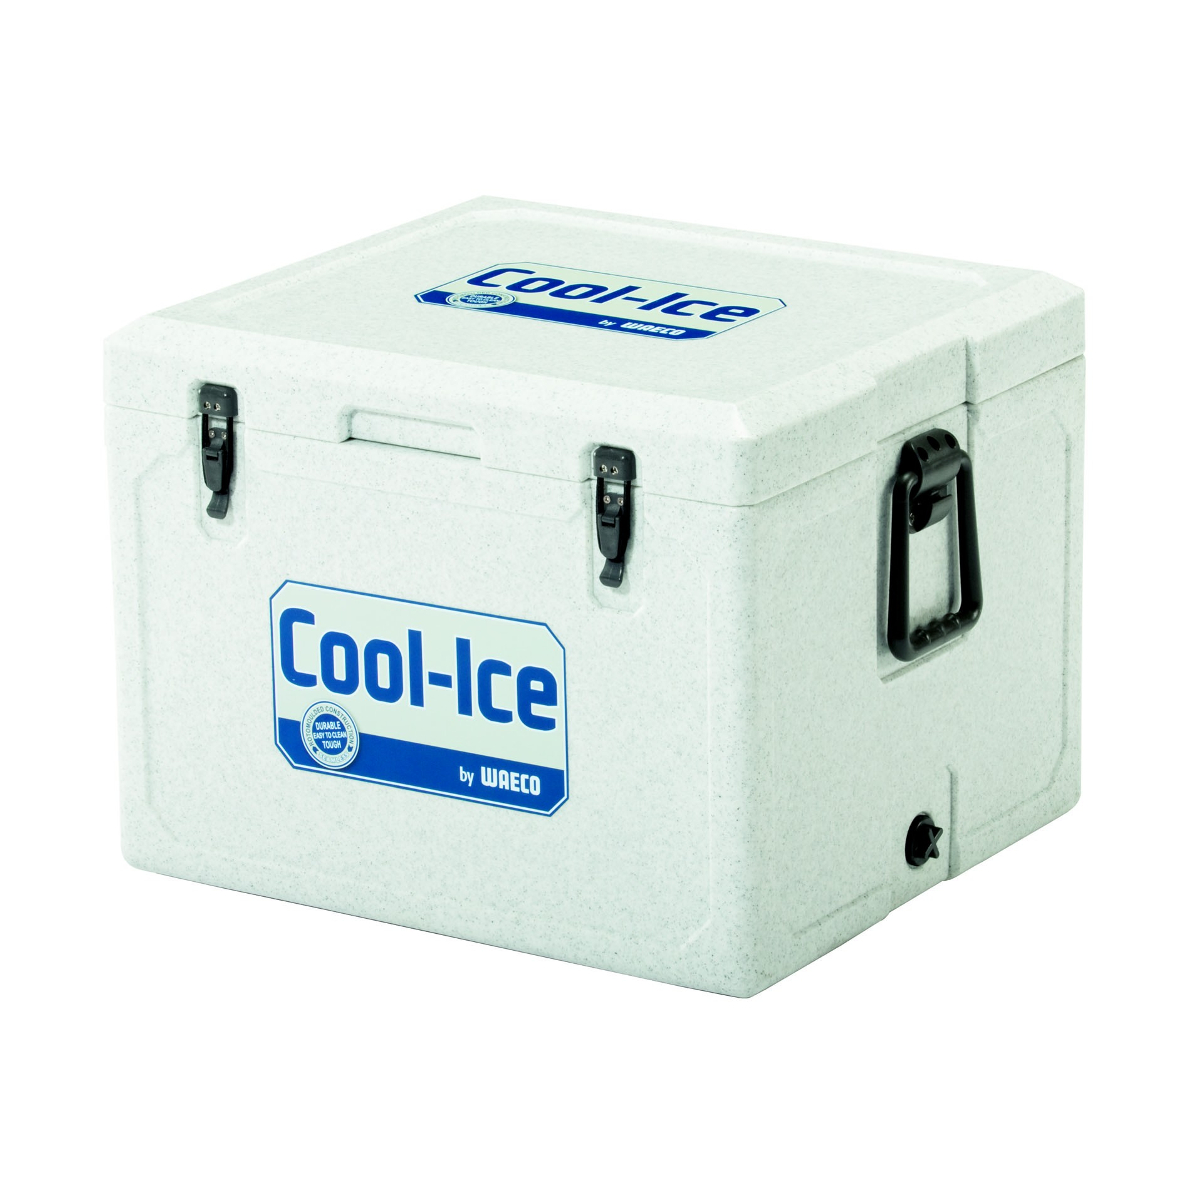 Айс бак. Термоконтейнер WAECO. Изотермический контейнер Дометик. Изотермический контейнер Dometic 110. Автомобильный холодильник Dometic cool-Ice WCI-42 Green.